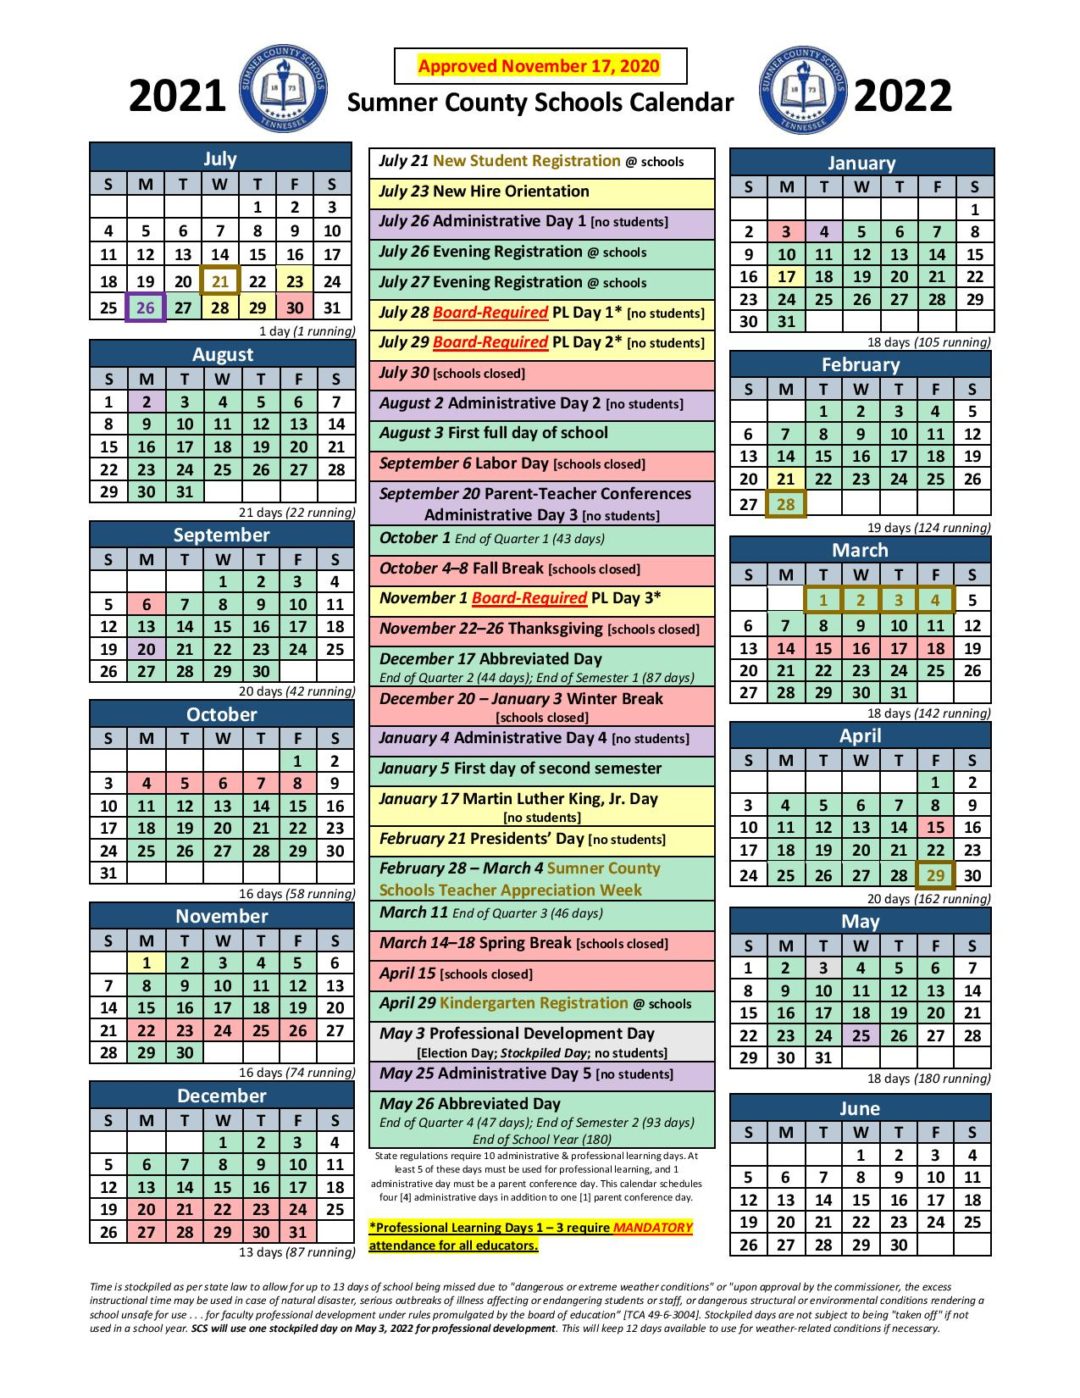 Sumner Schools Calendar 24 25 Winny Colette